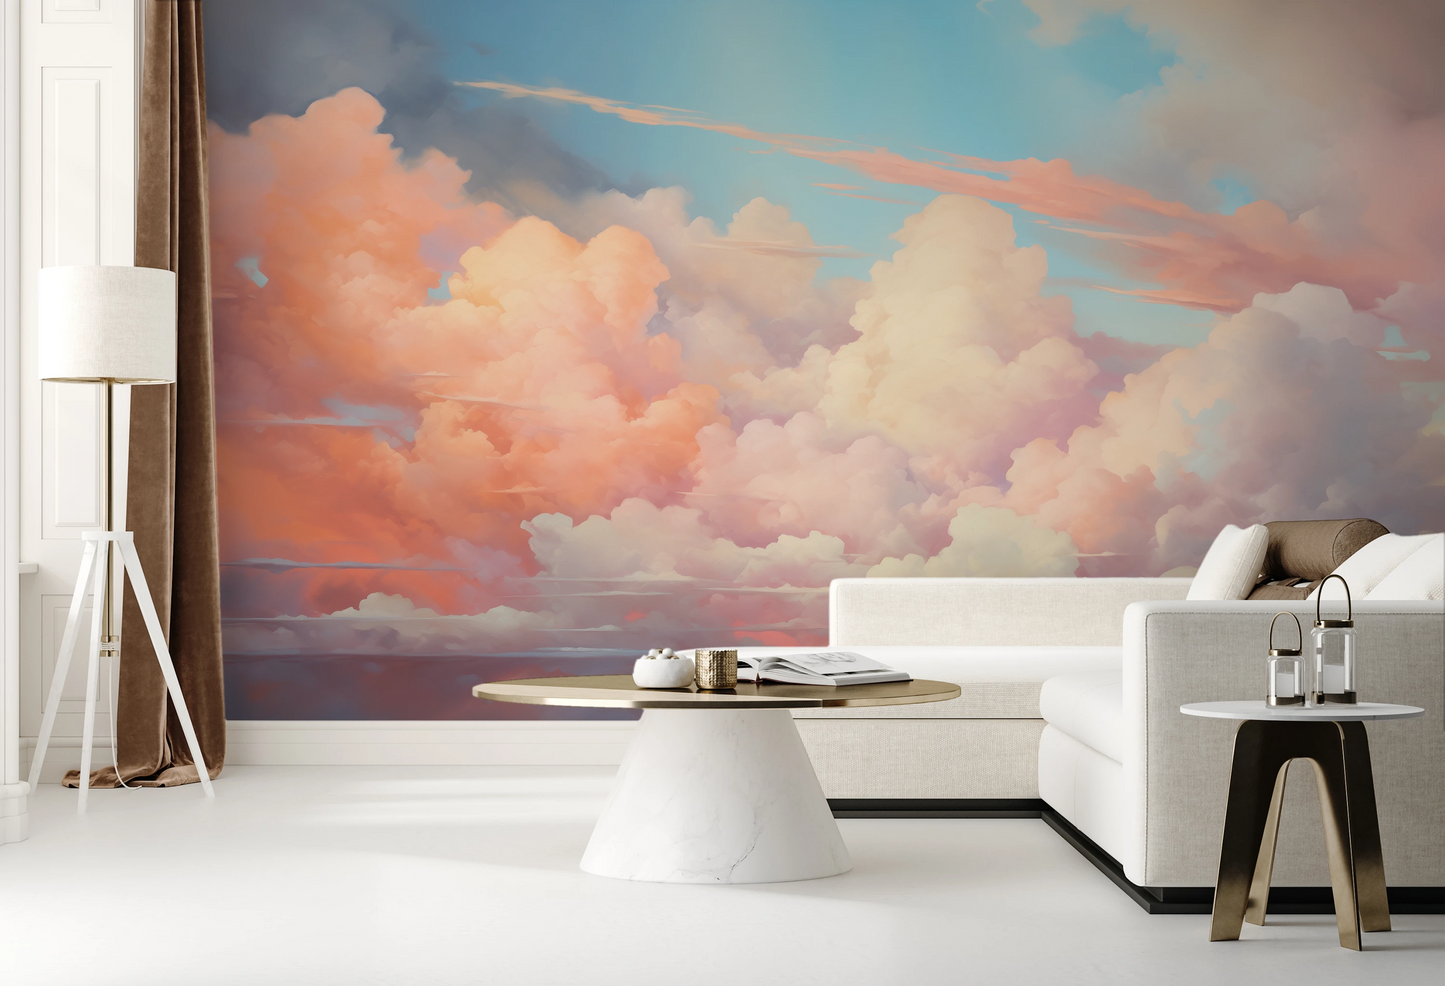 Wzór fototapety artystycznej o nazwie Cotton Candy Skies pokazanej w aranżacji wnętrza.